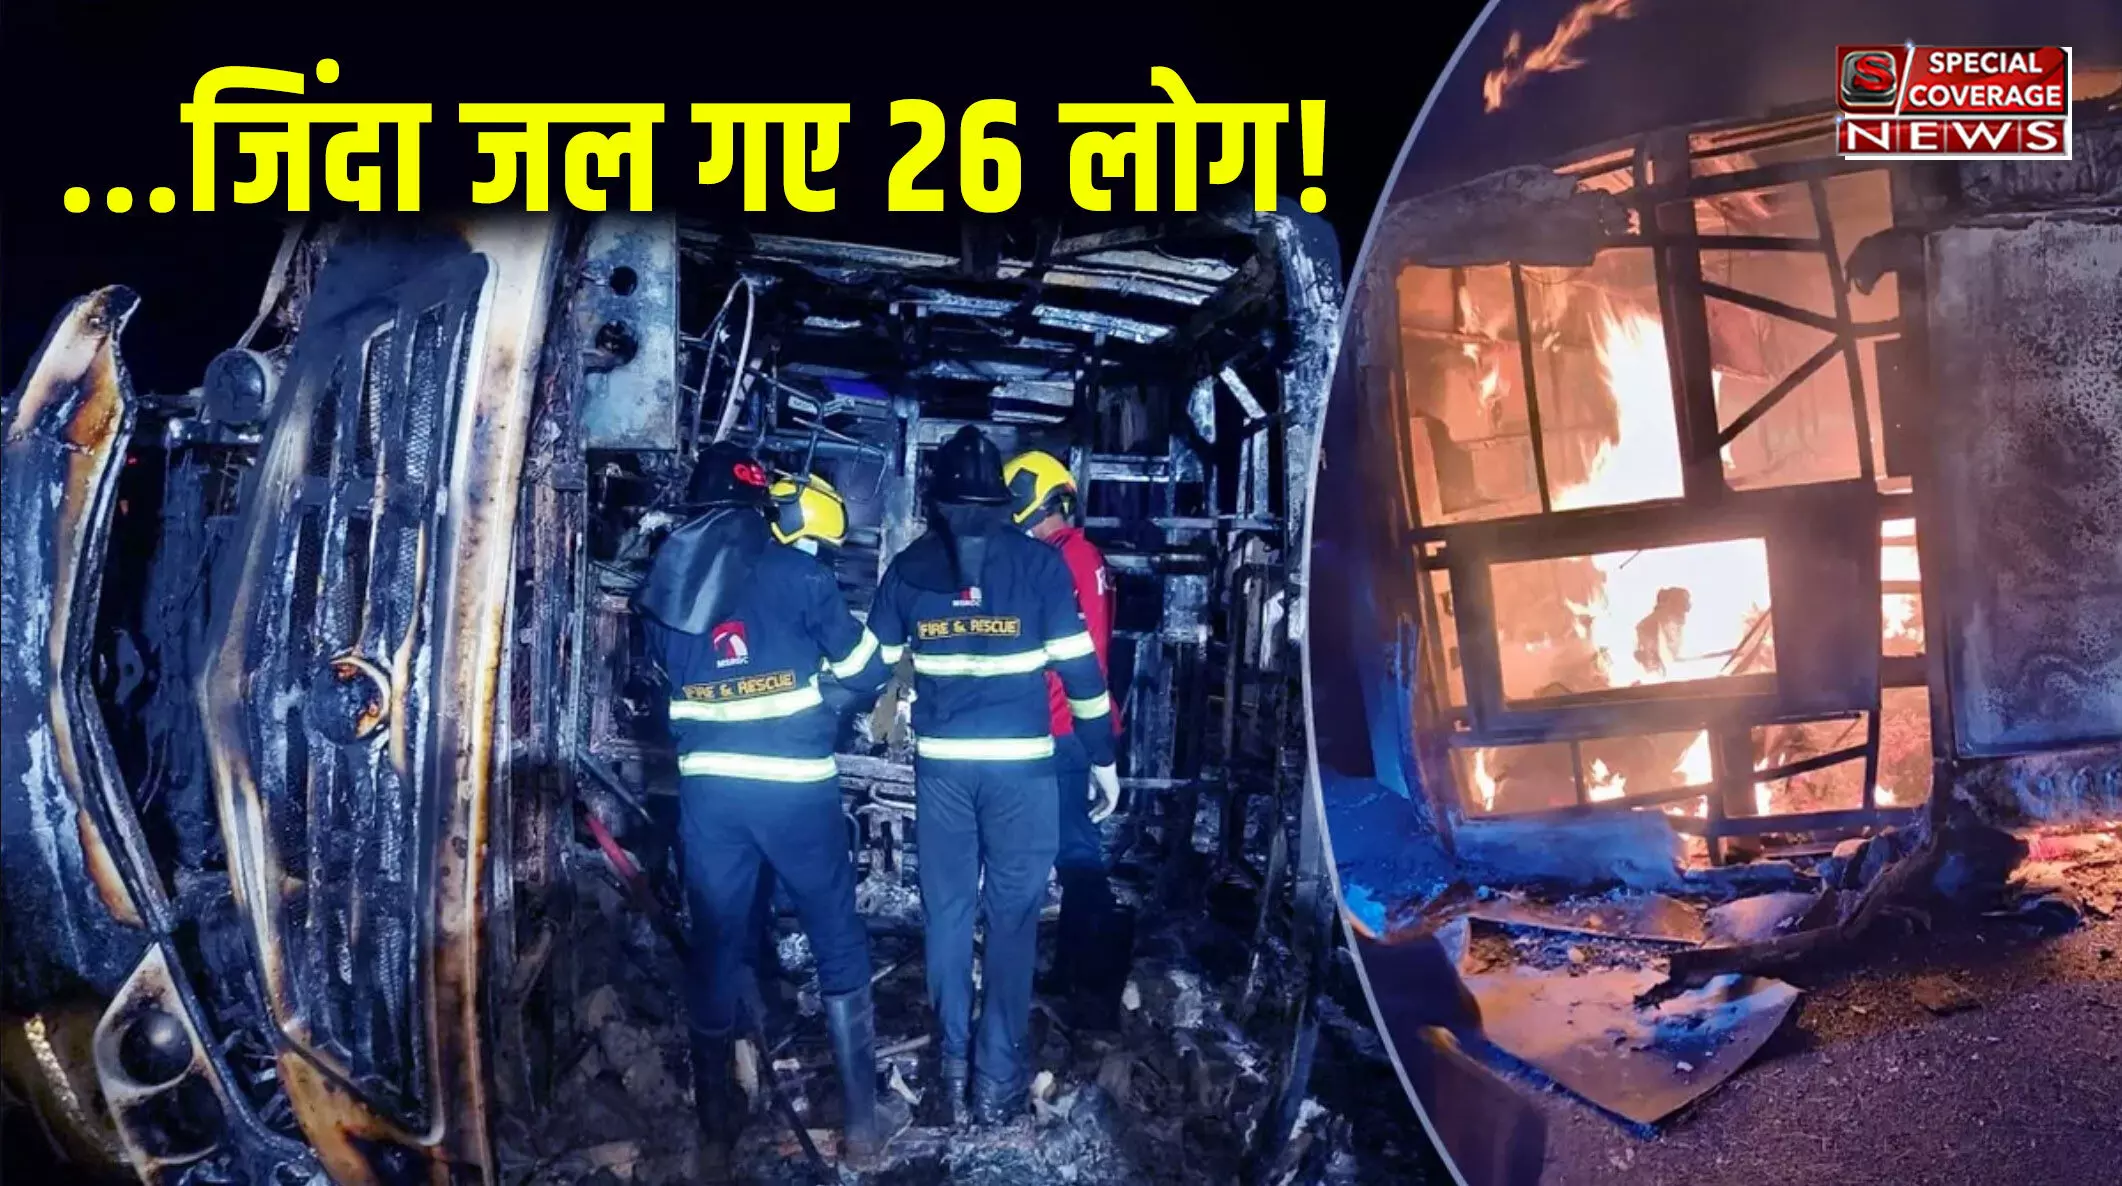 महाराष्ट्र में दर्दनाक हादसे में बस में जिंदा जल गए 26 लोग...डिवाइडर से टकराने के बाद टायर में ब्लास्ट, फिर धधक उठी बस